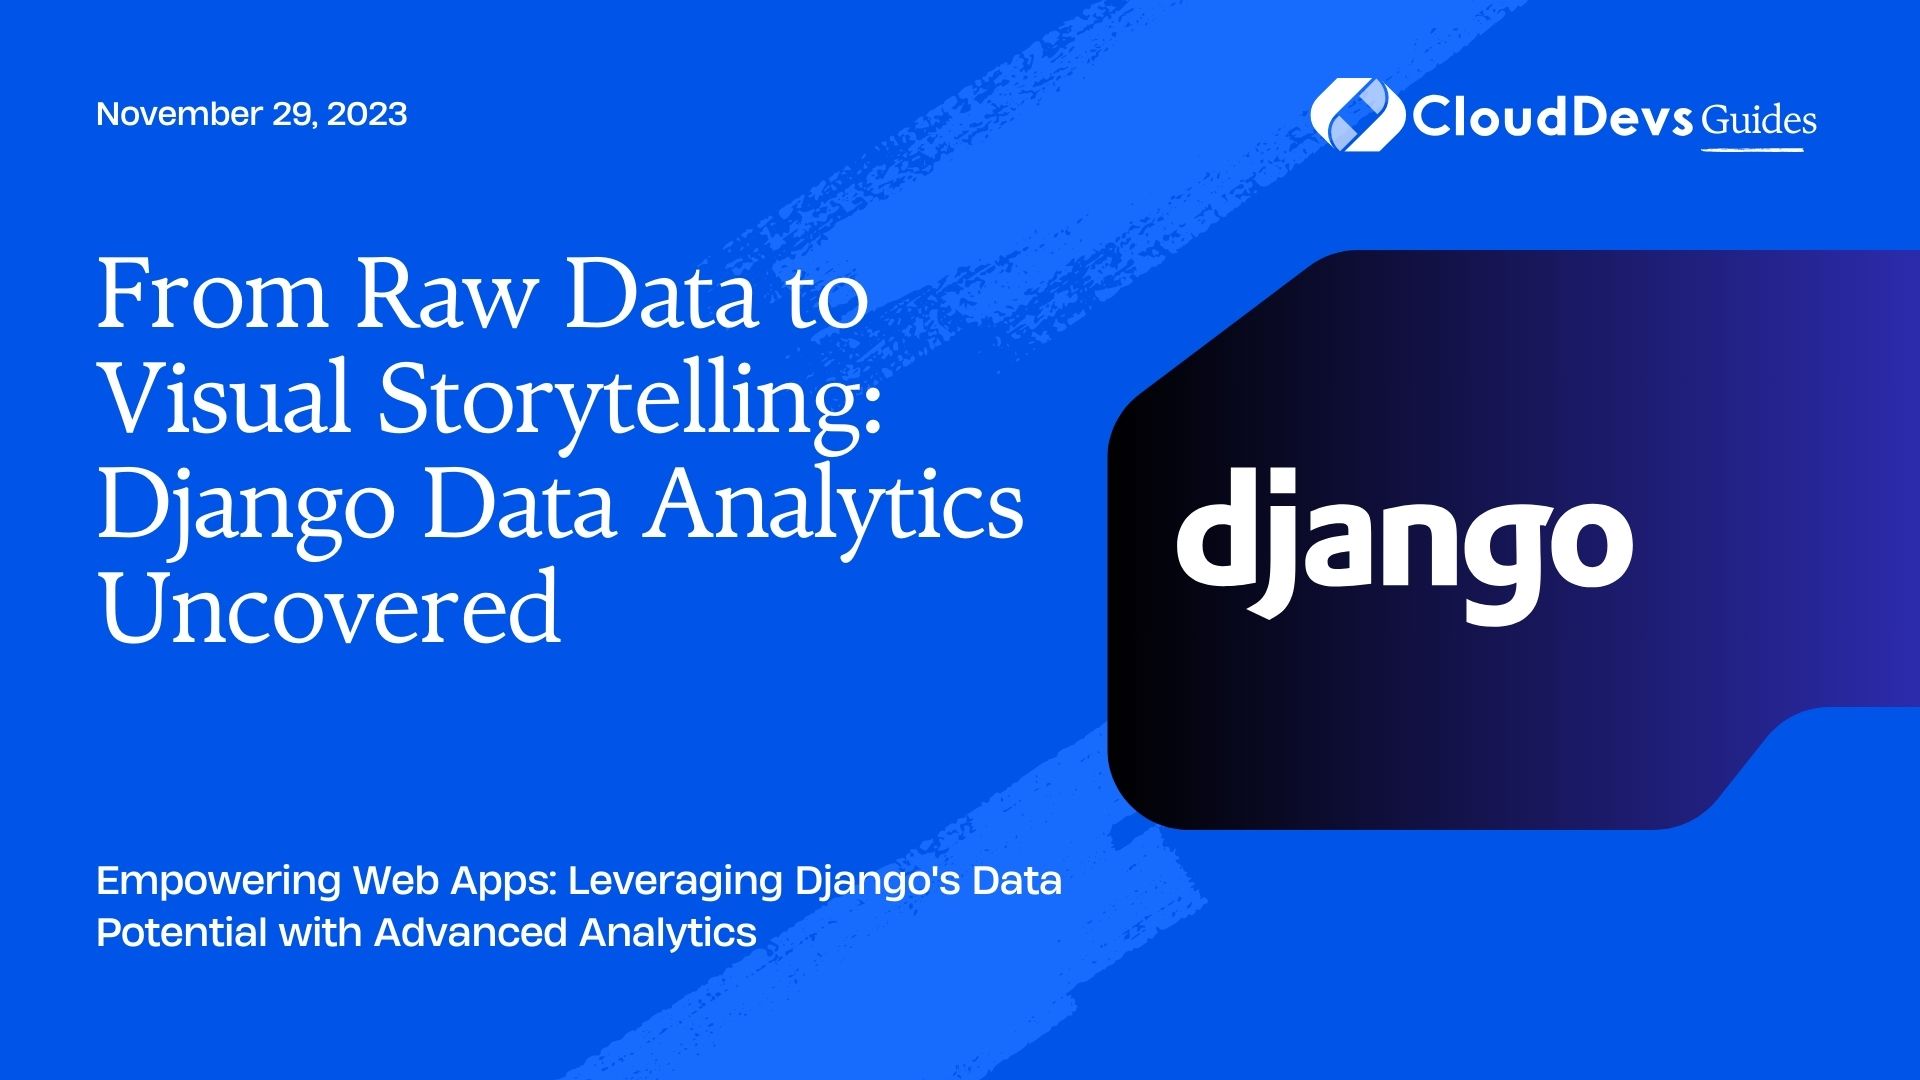 From Raw Data to Visual Storytelling: Django Data Analytics Uncovered